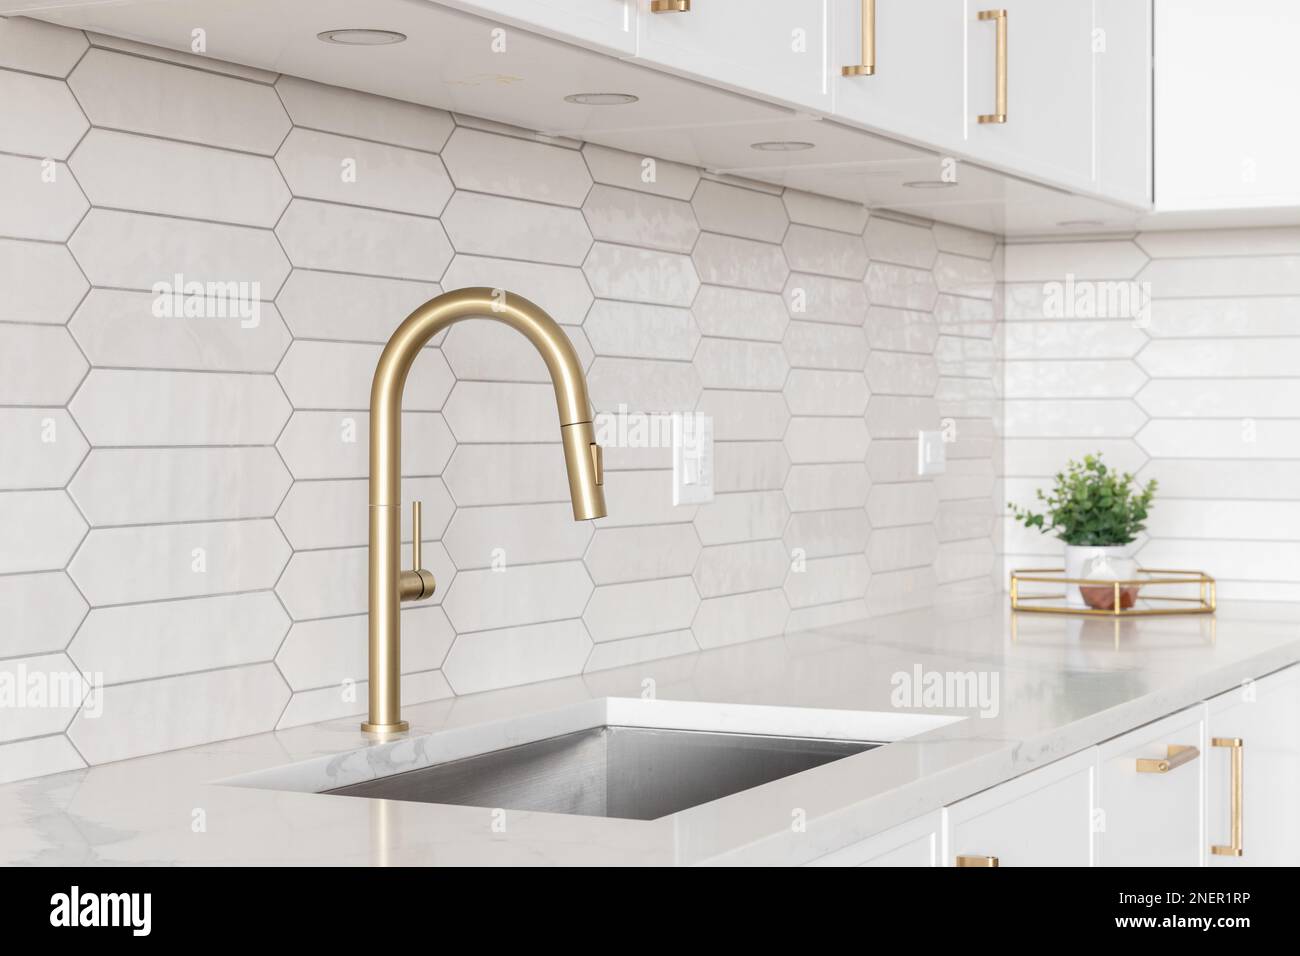 Un beau robinet de cuisine avec des armoires blanches, un robinet d'or, des comptoirs en marbre blanc, et un fond de carreaux de céramique marinés. Banque D'Images